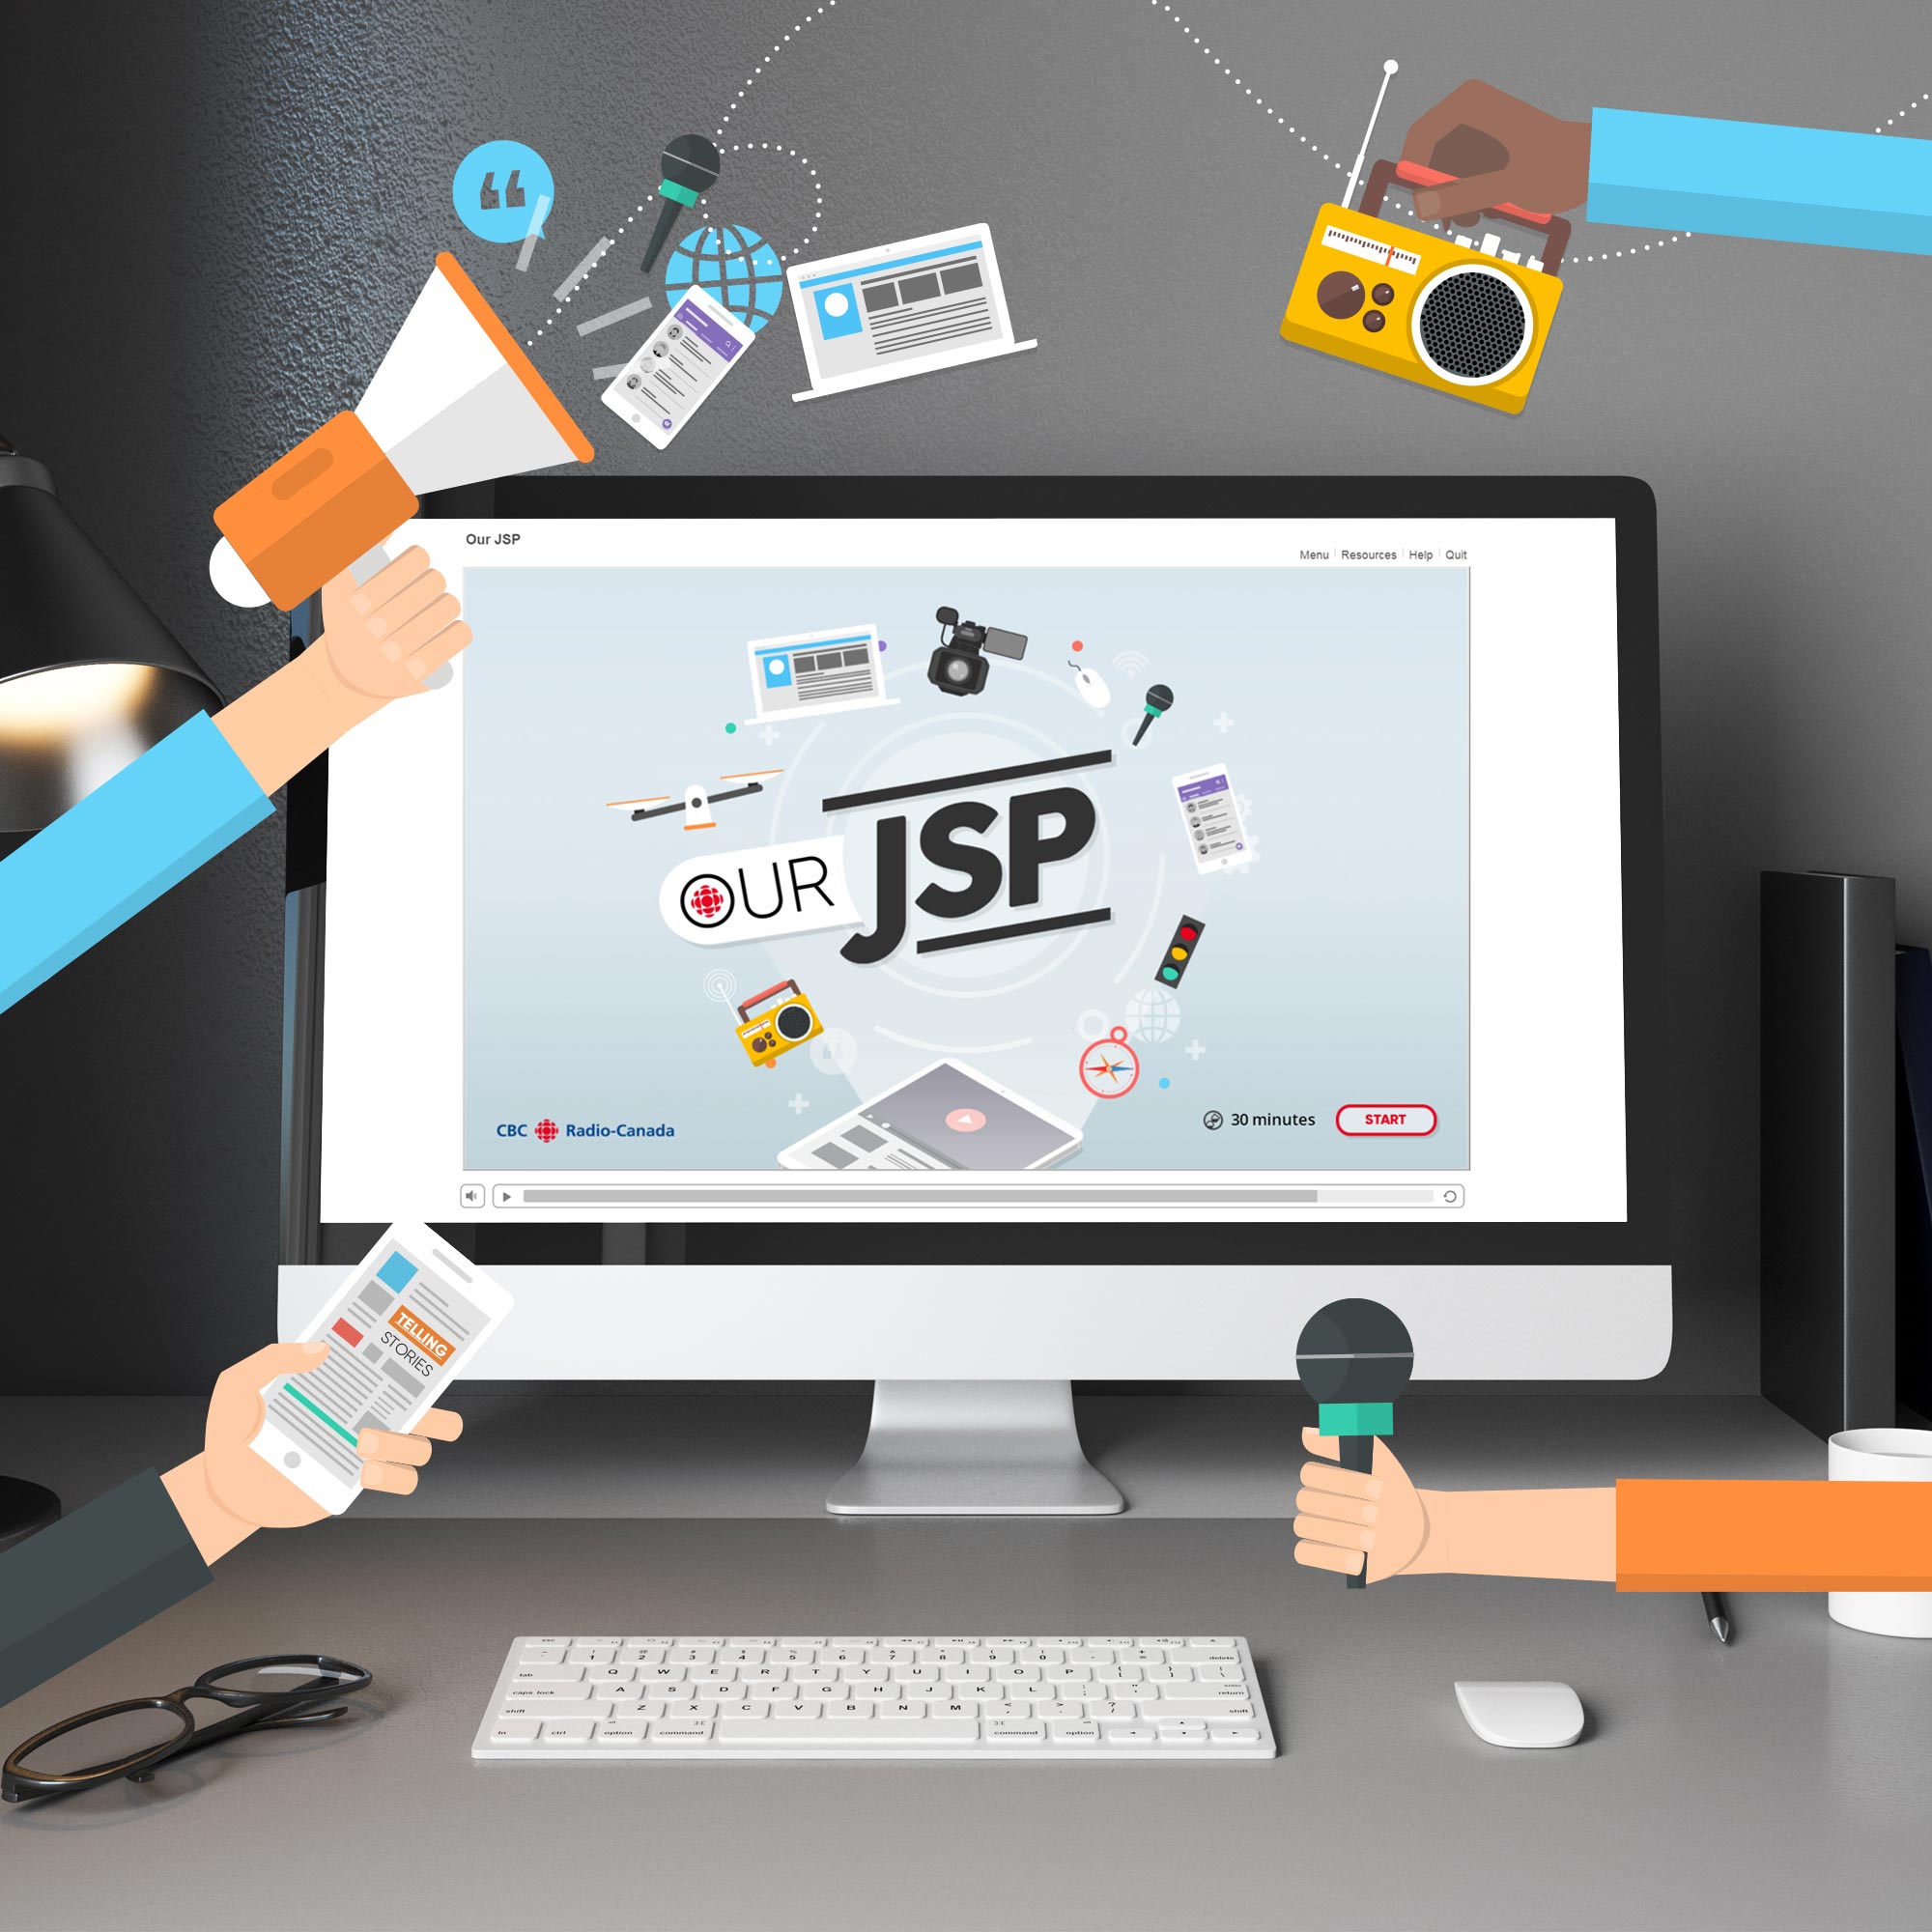 Projet Our JSP - CBC